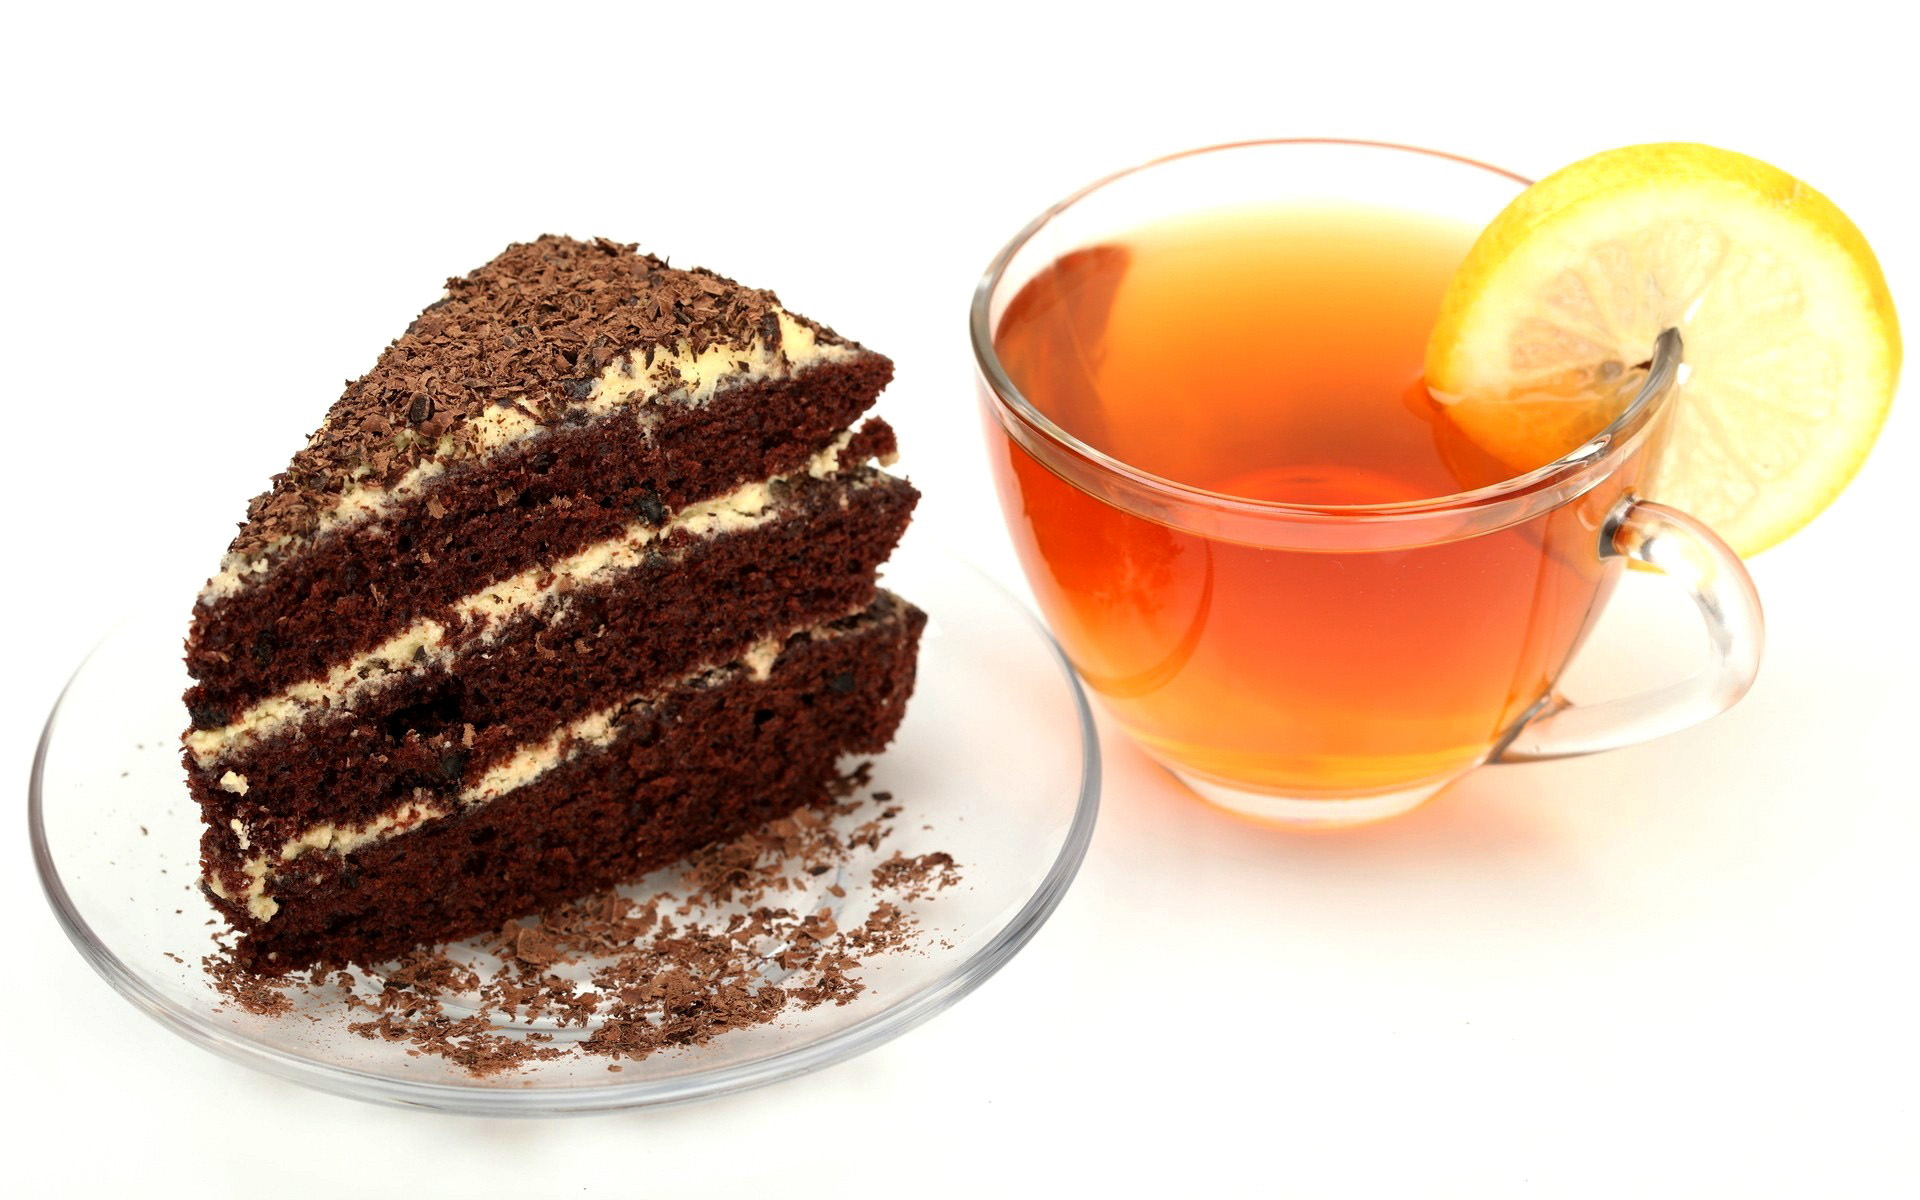 Картинка Чай с тортиком » Чай » Еда » Картинки 24 - скачать картинки  бесплатно